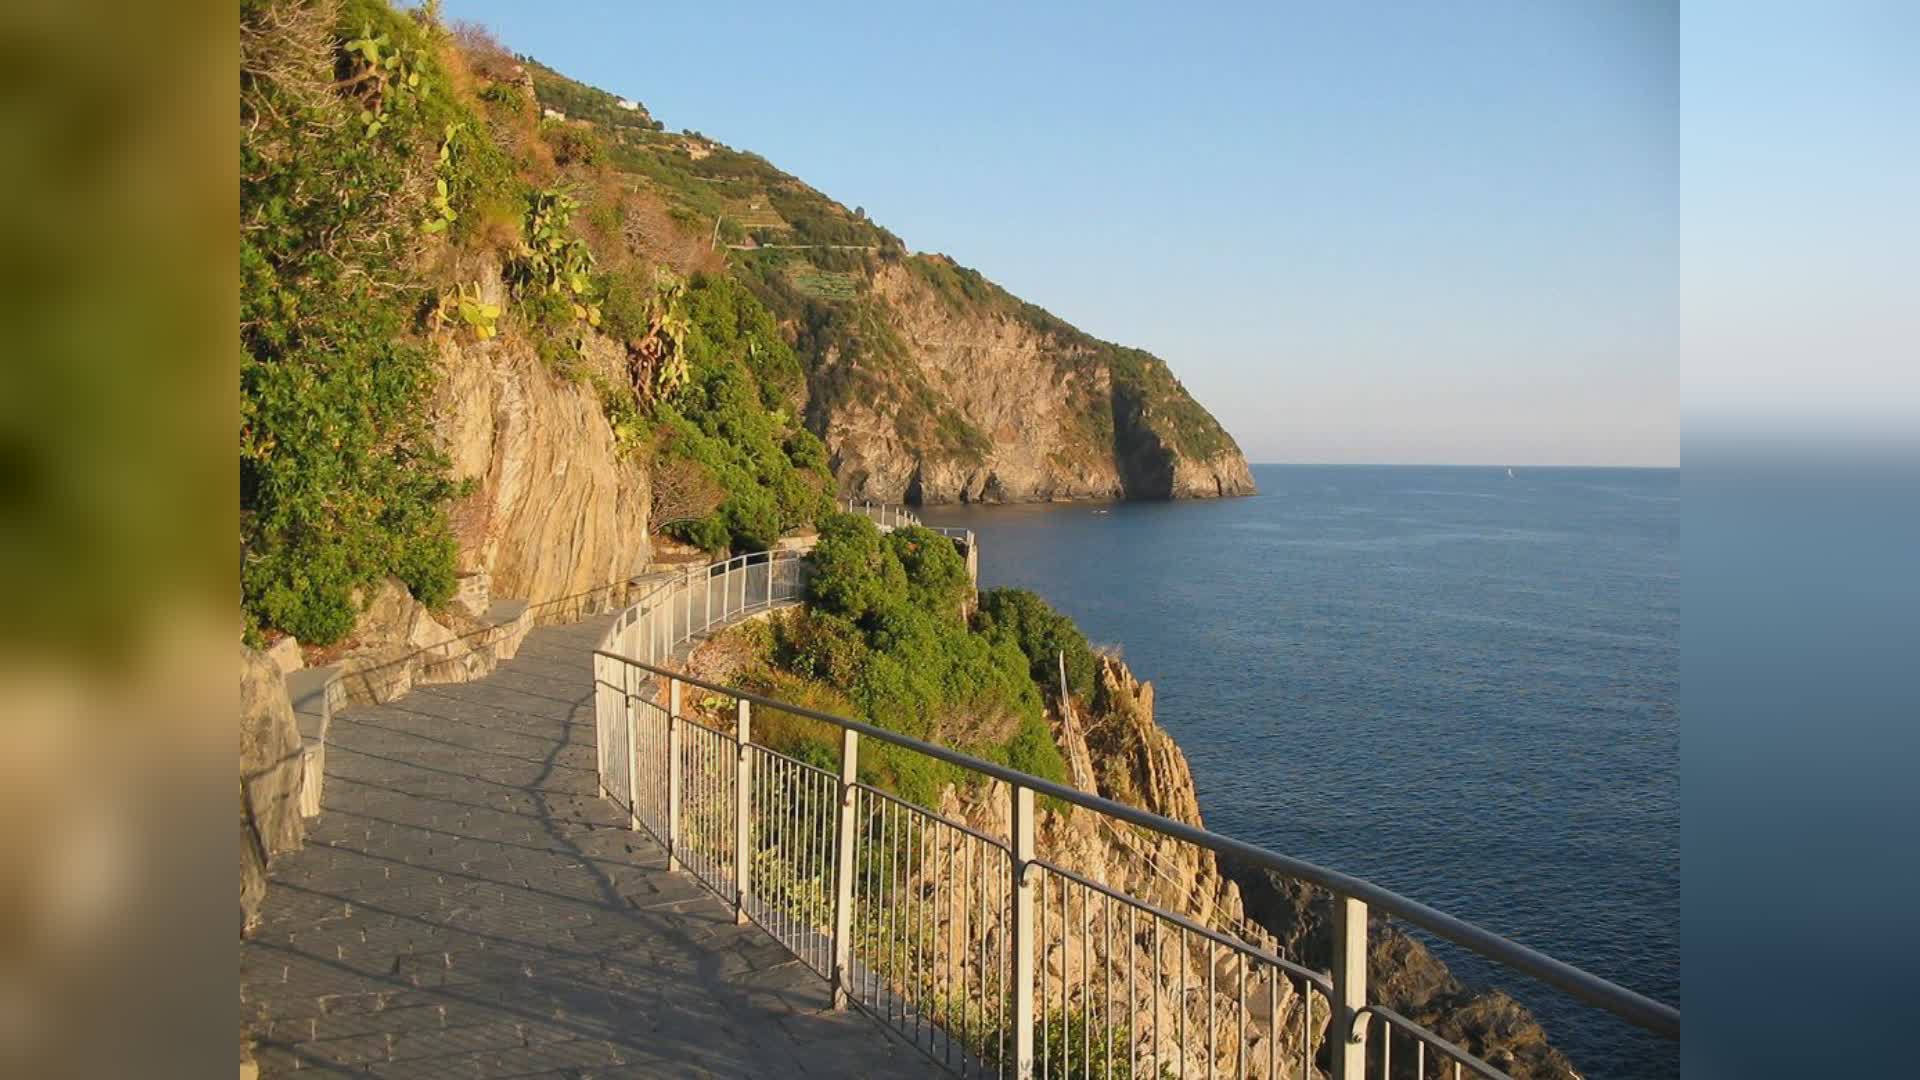 Cinque Terre, Via dell'Amore, ministro Santanchè: "Regione Liguria ha ripristinato un percorso famoso nel mondo"